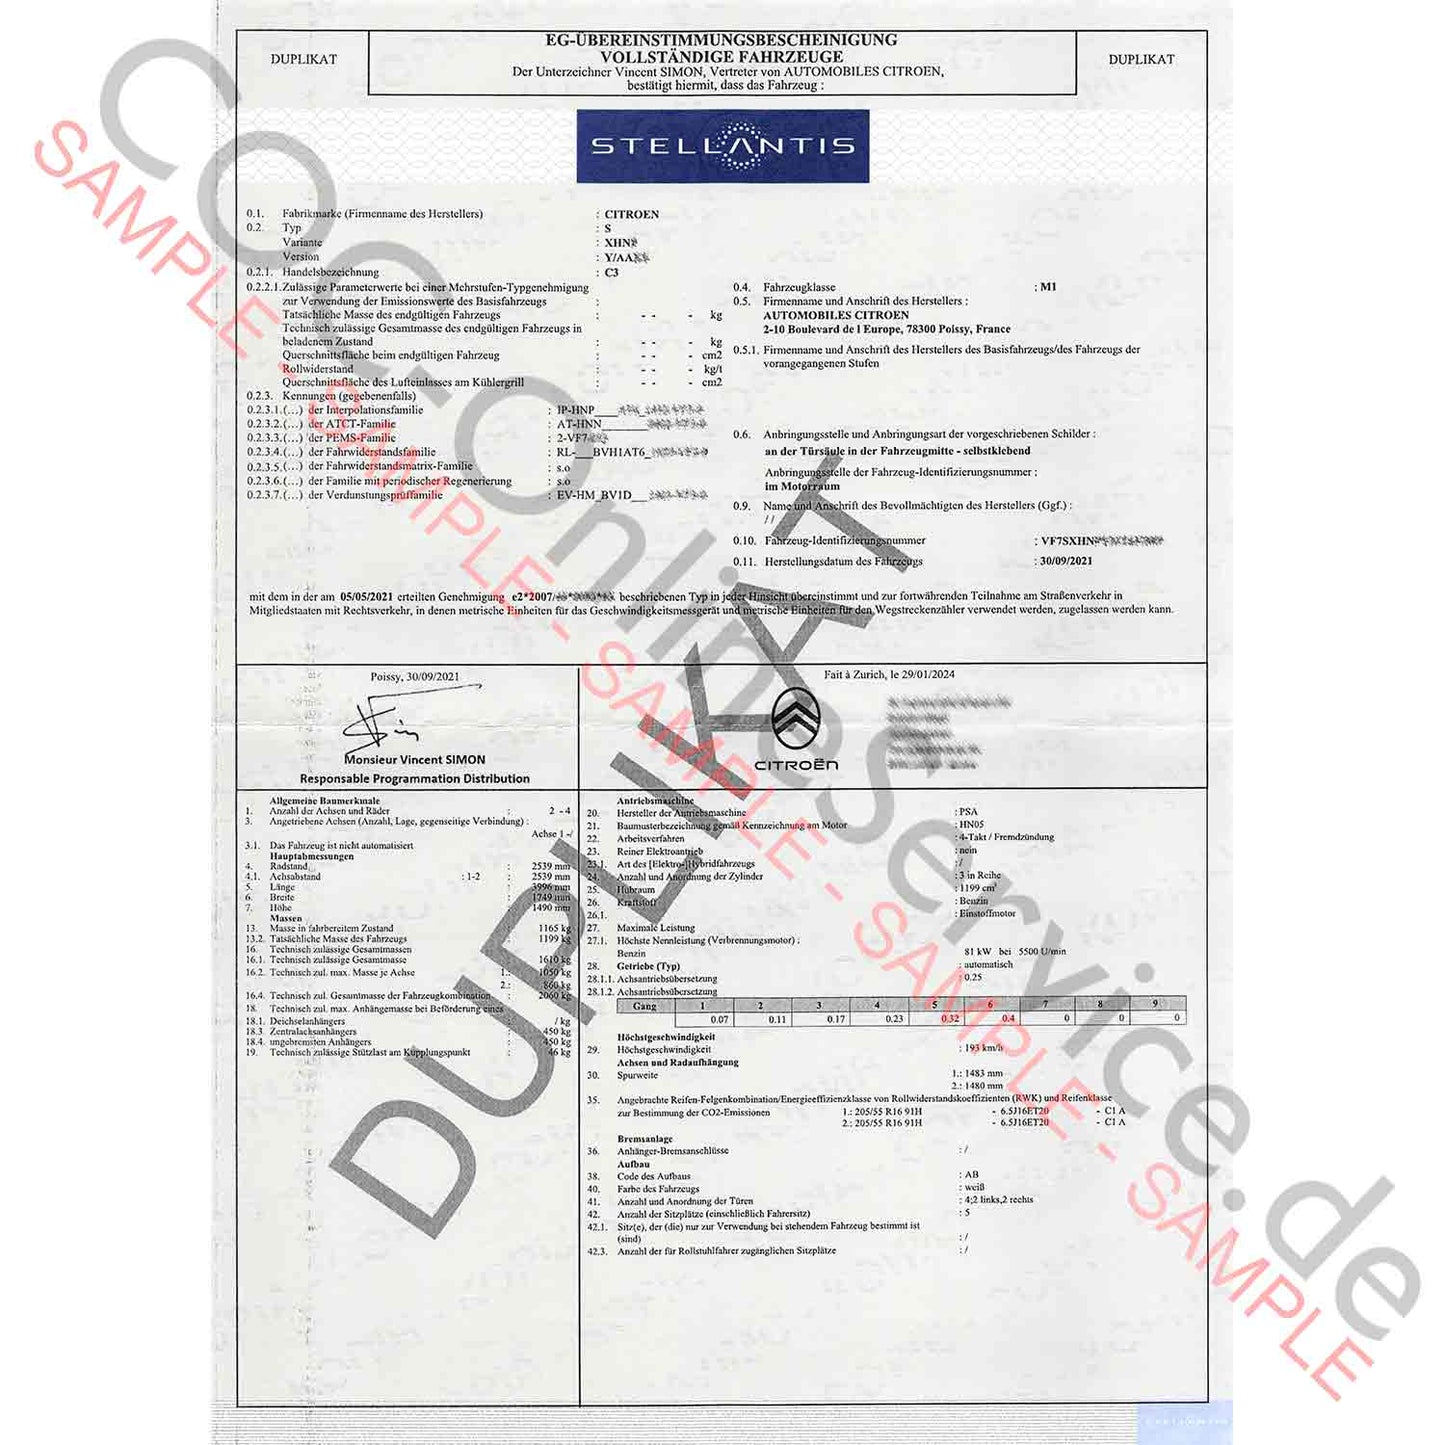 Documenti COC per Citroën (Certificato di conformità)